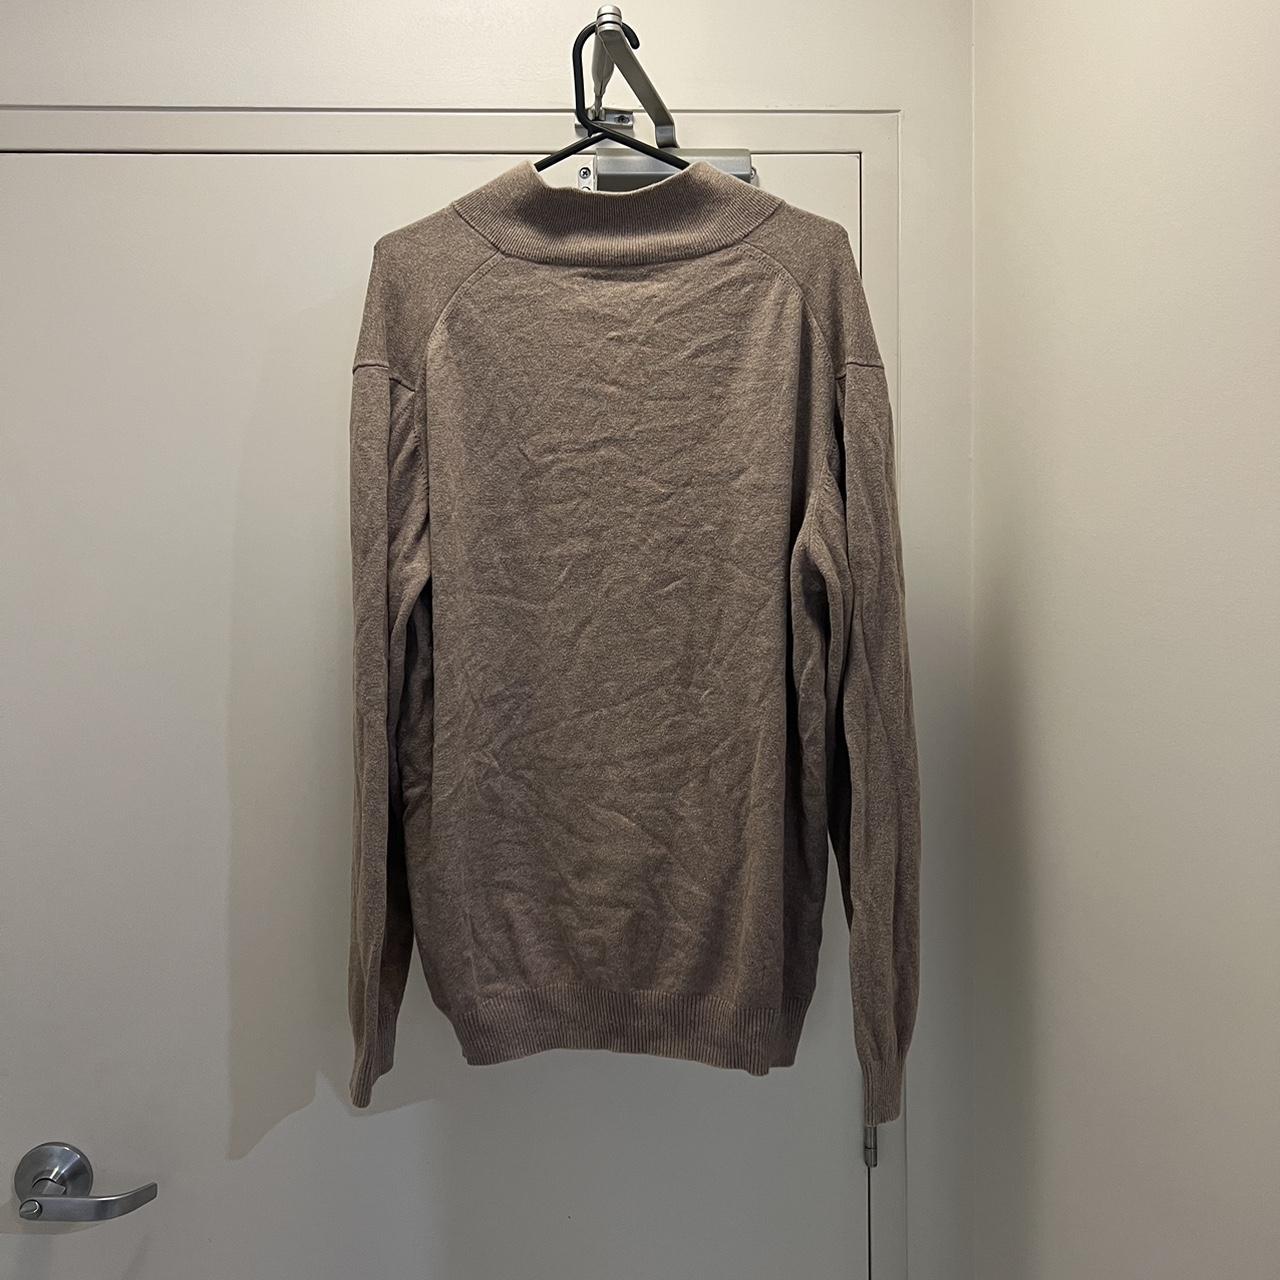 Quarter zip / 1/4 zip men’s brown jumper / sweater... - Depop